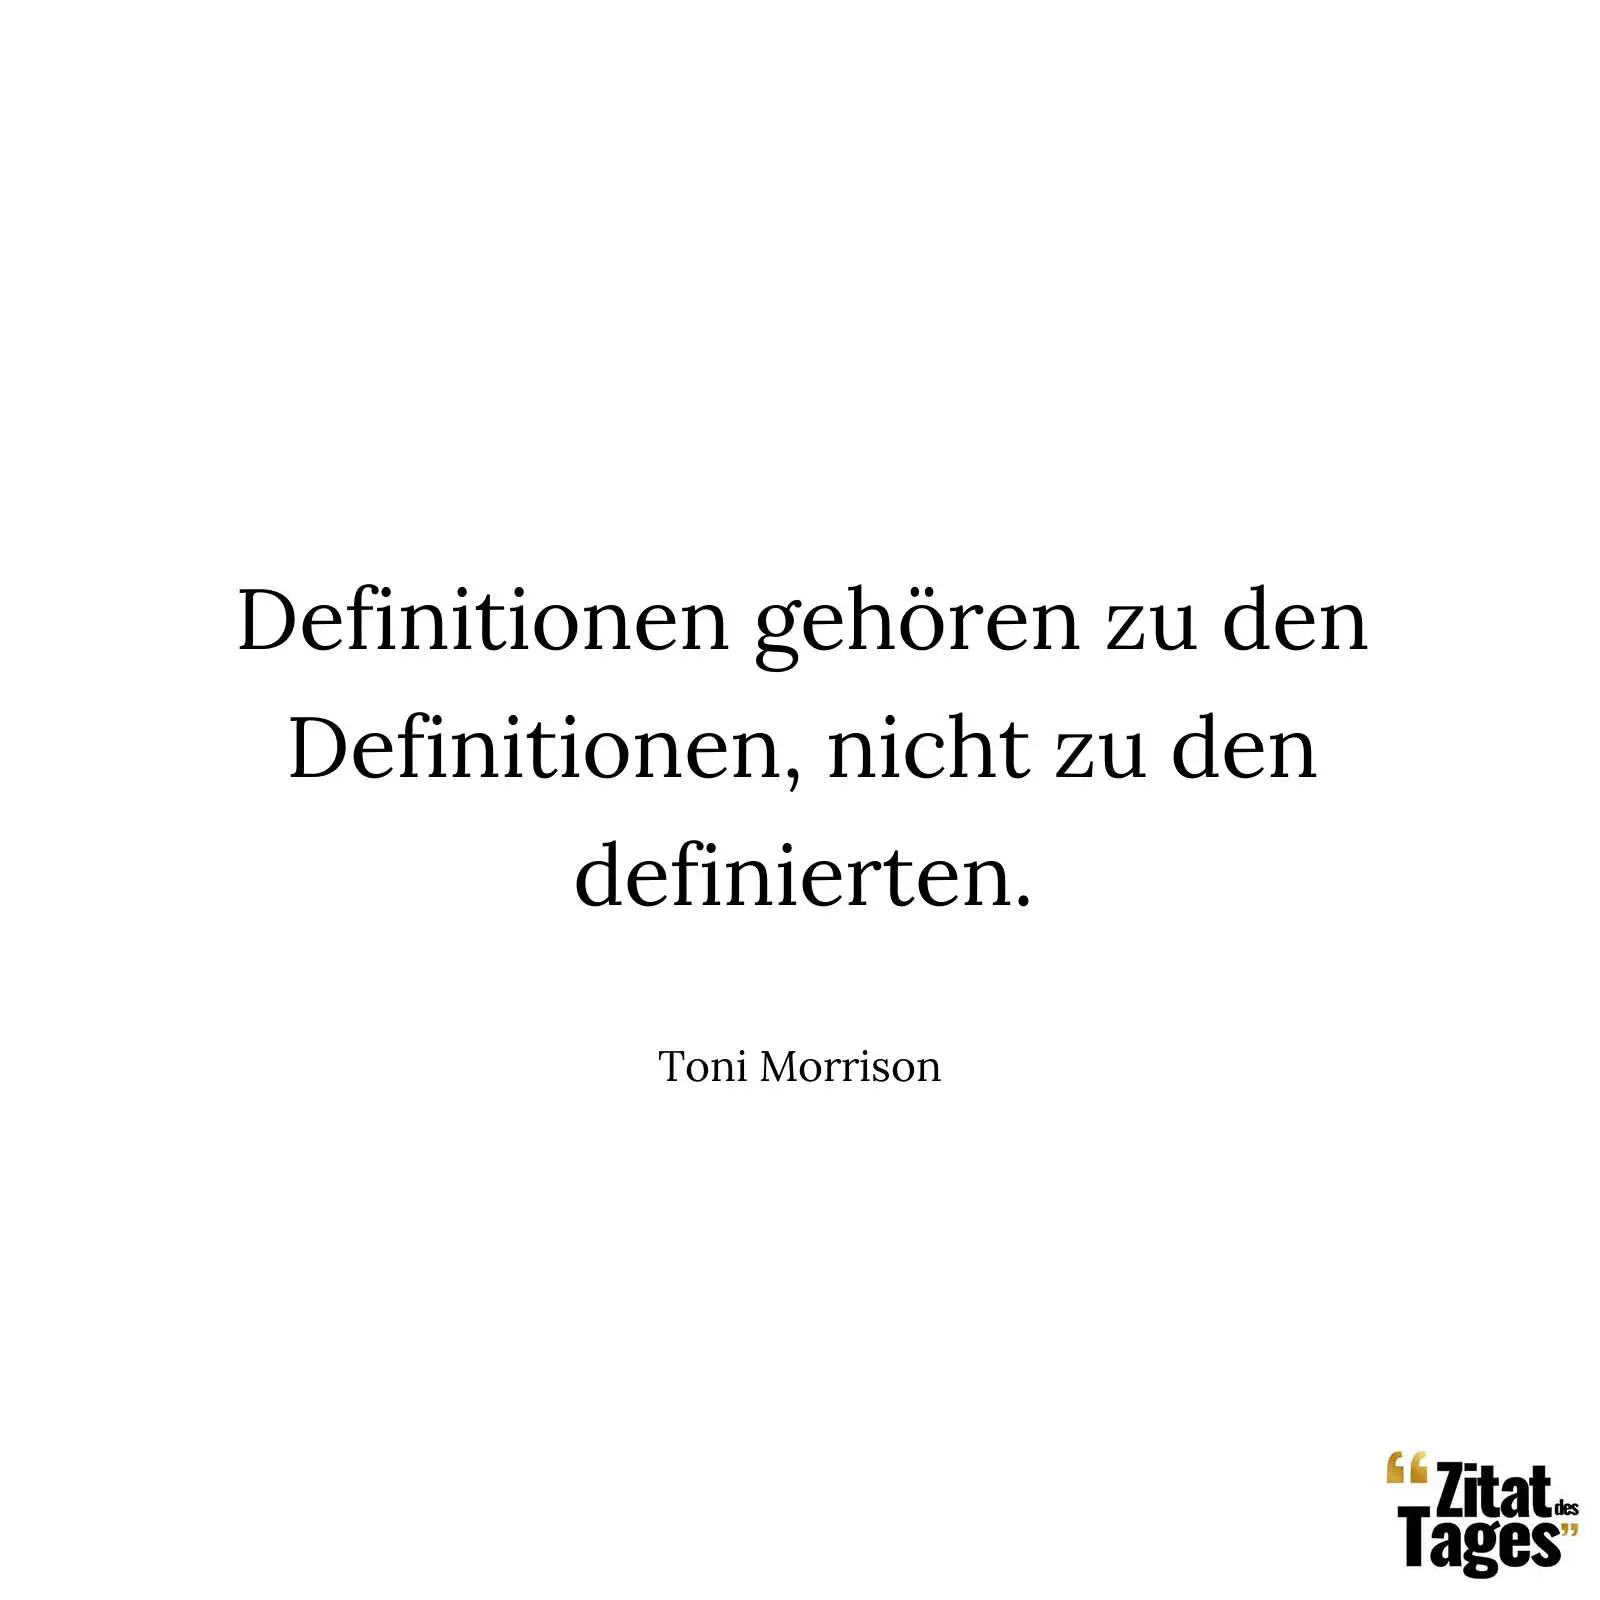 Definitionen gehören zu den Definitionen, nicht zu den definierten. - Toni Morrison